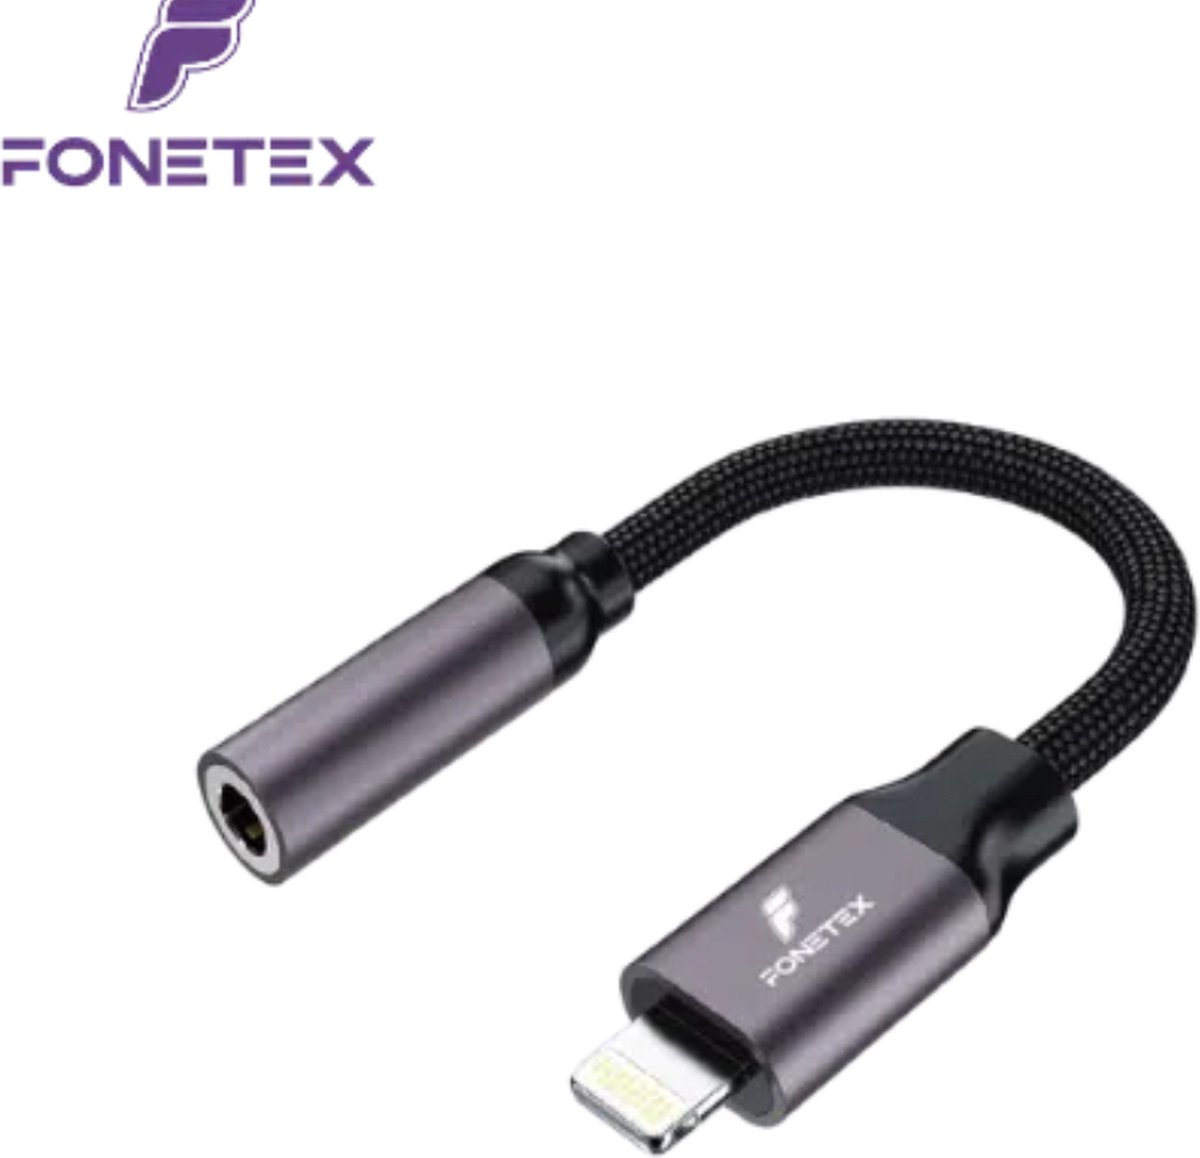 Fonetex adapter converter